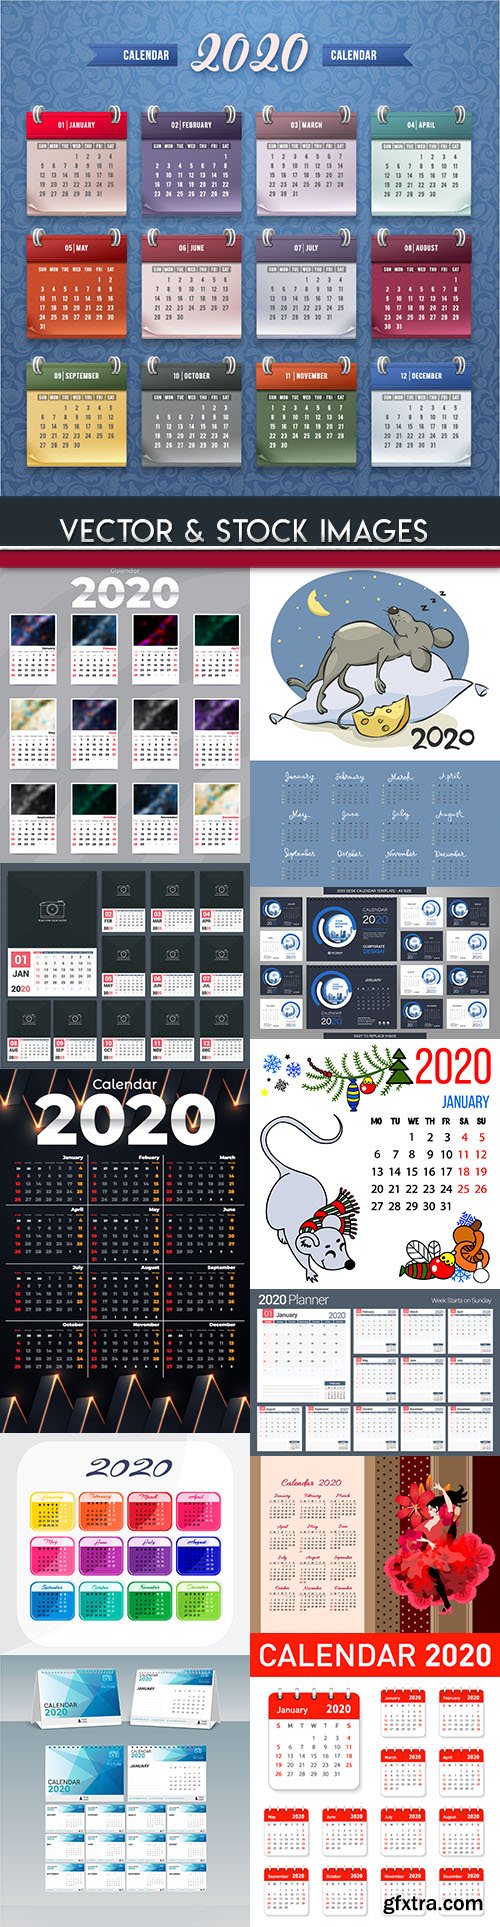 Calendar New Year 2020 design template